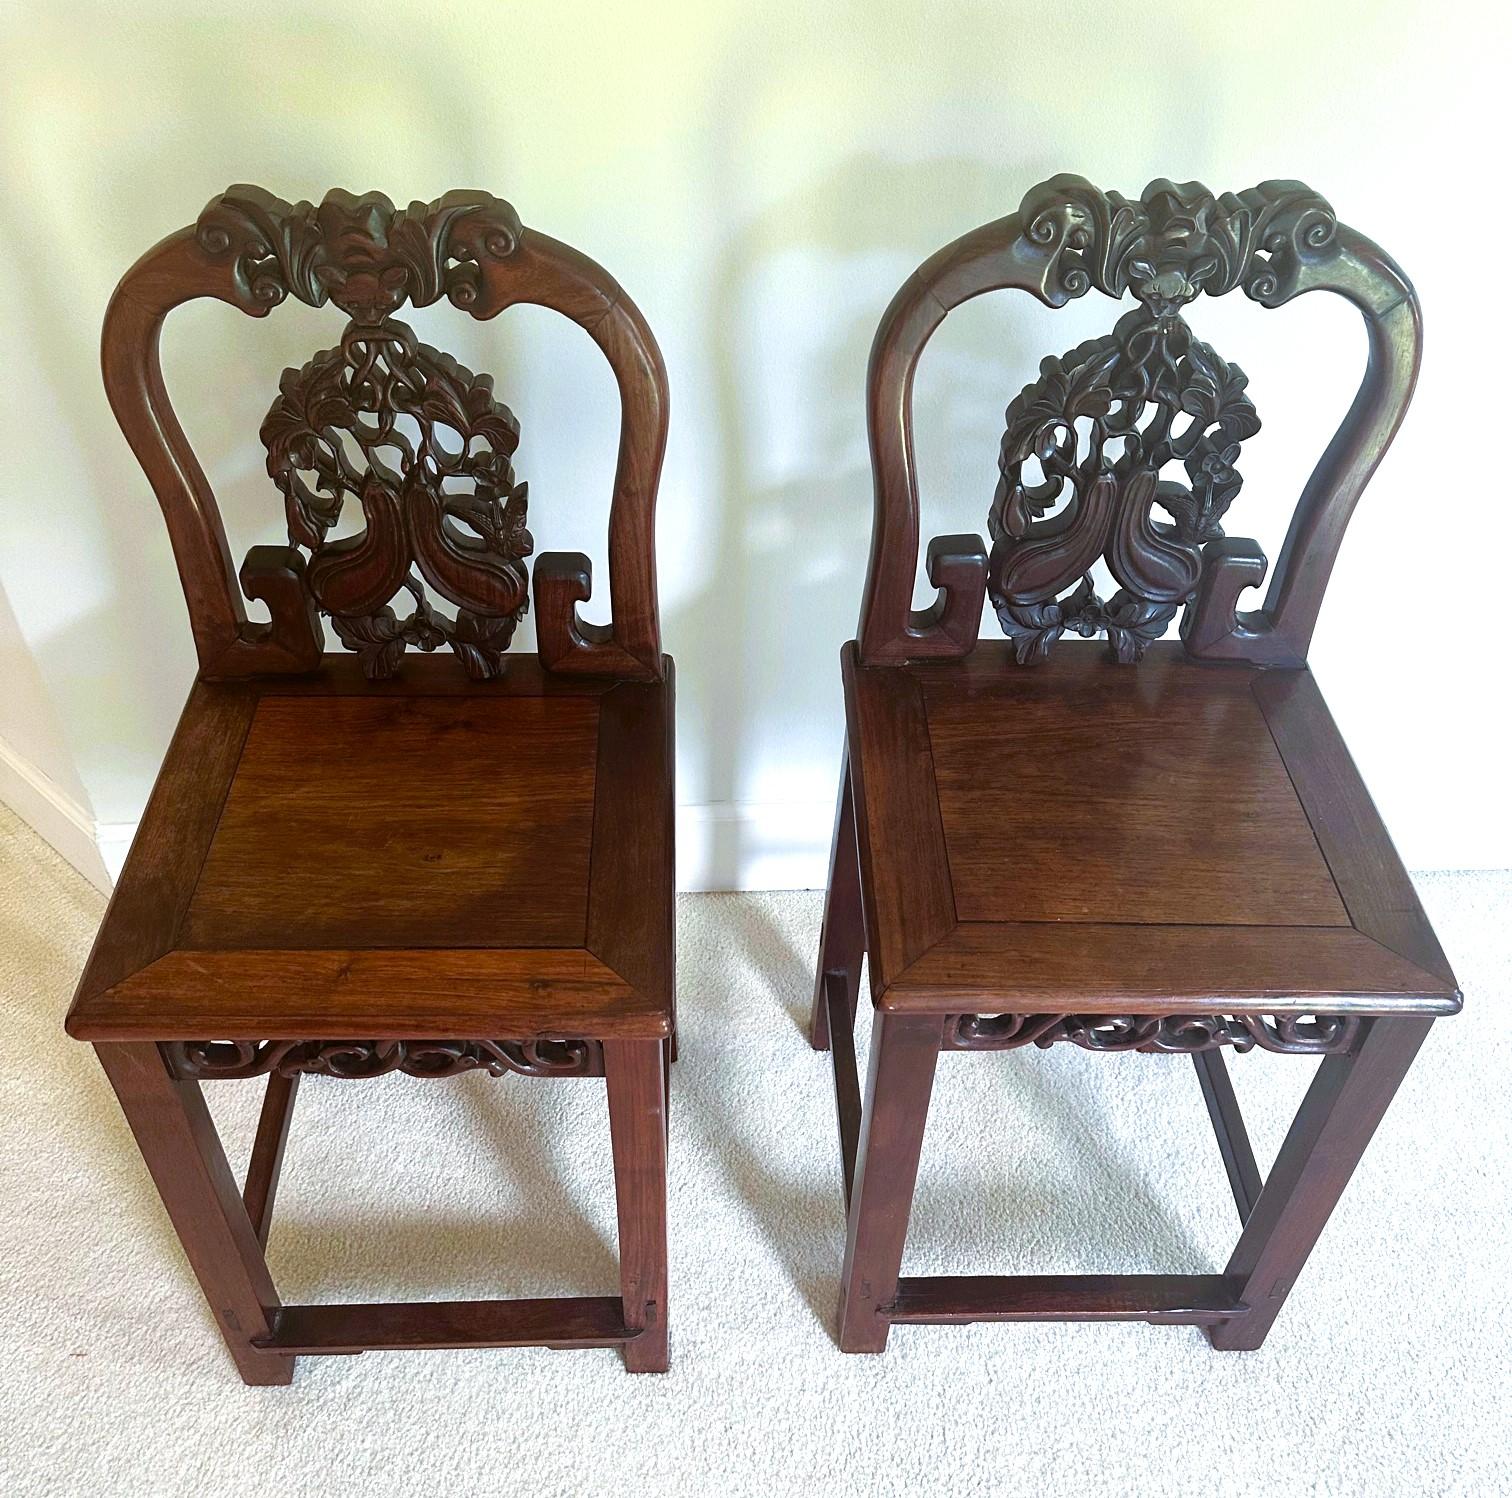 Paire de chaises d'appoint chinoises anciennes, vers le XIXe siècle, fin de la dynastie Qing. Fabriqué en Hong Mu, un bois dur qui ressemble au bois de rose chinois Huanghuali. Ces chaises sont dotées d'un dossier cravaté avec des symboles de